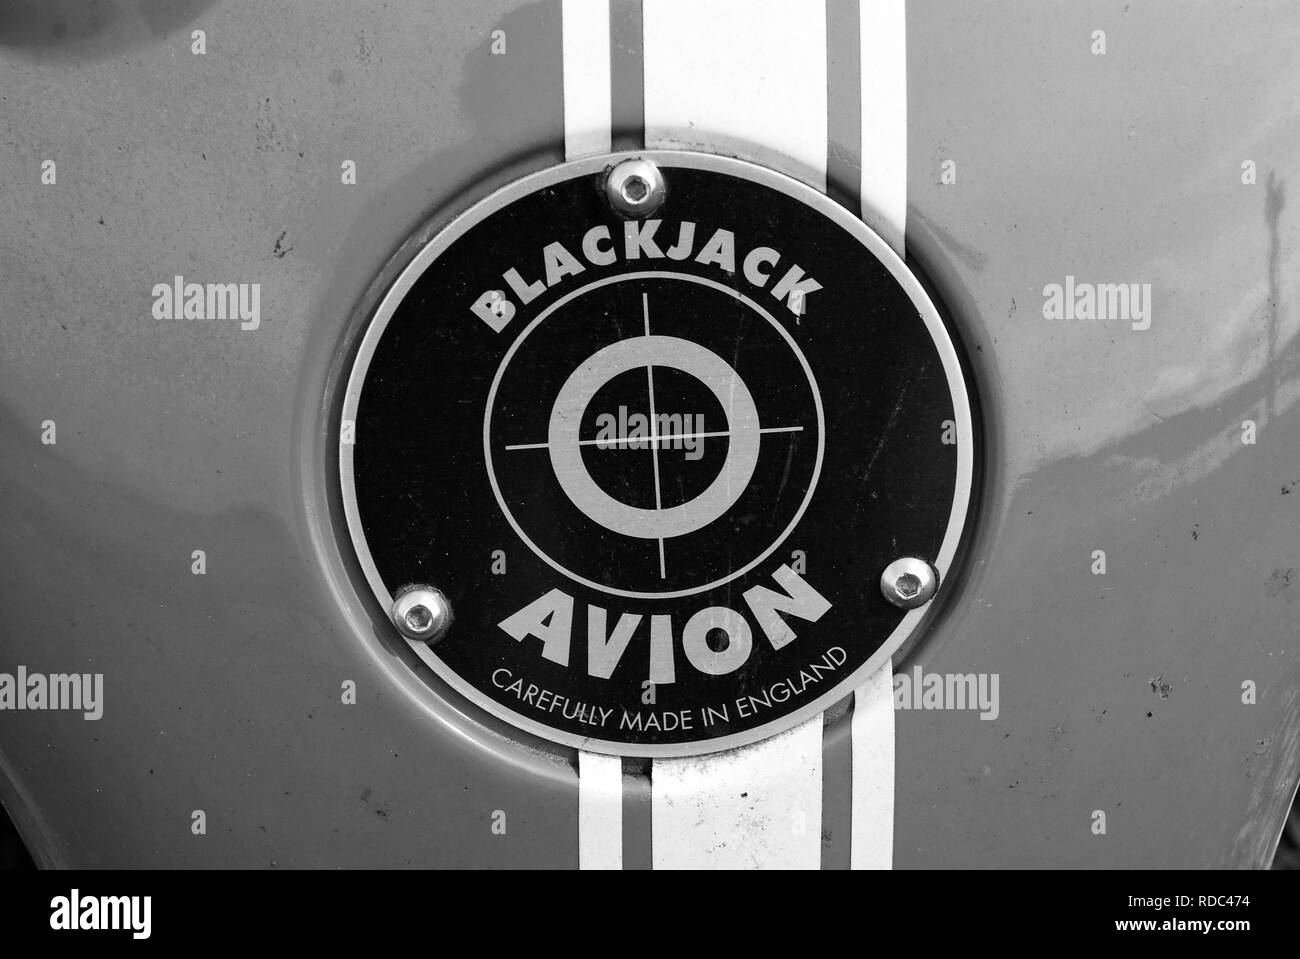 Oban, Großbritannien - 20 Februar 2010: Blackjack avion Auto Abzeichen. Rote Abzeichen auf Blau Metall Hintergrund. Auto Name und Emblem. Automotive Logo. Transport und Verkehr. Stockfoto